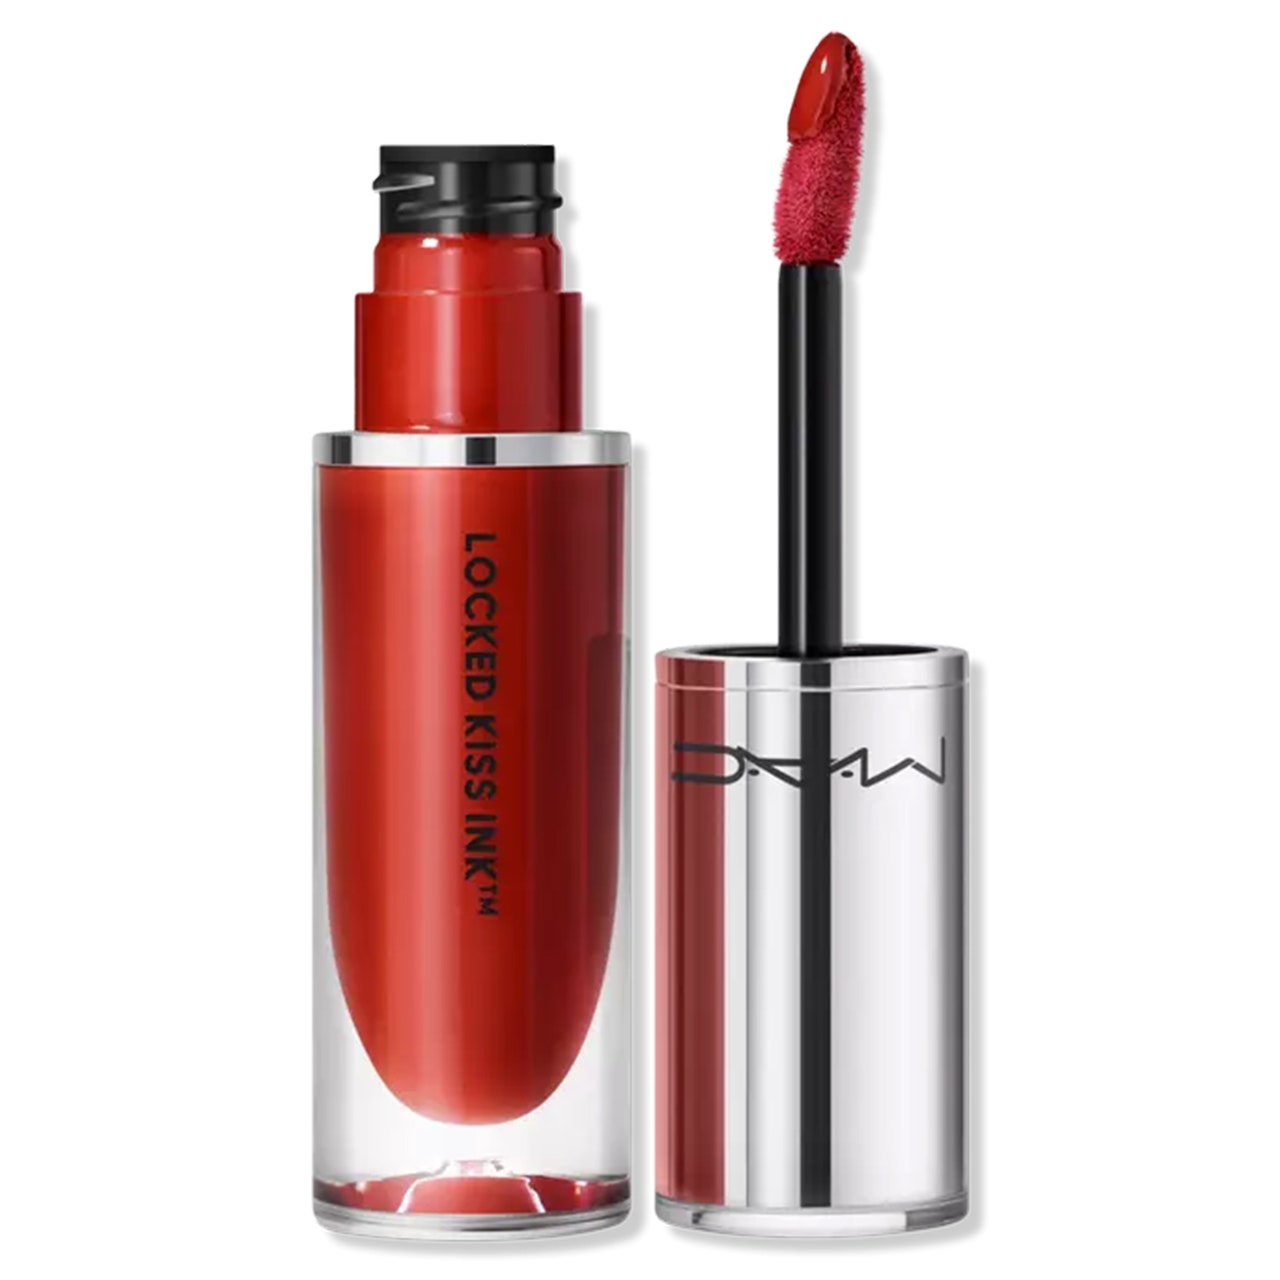 MAC Locked Kiss Ink Lippenstift, Tube mit warmem, rotem, flüssigem Lippenstift mit silberner Kappe und Stift an der Seite auf weißem Hintergrund